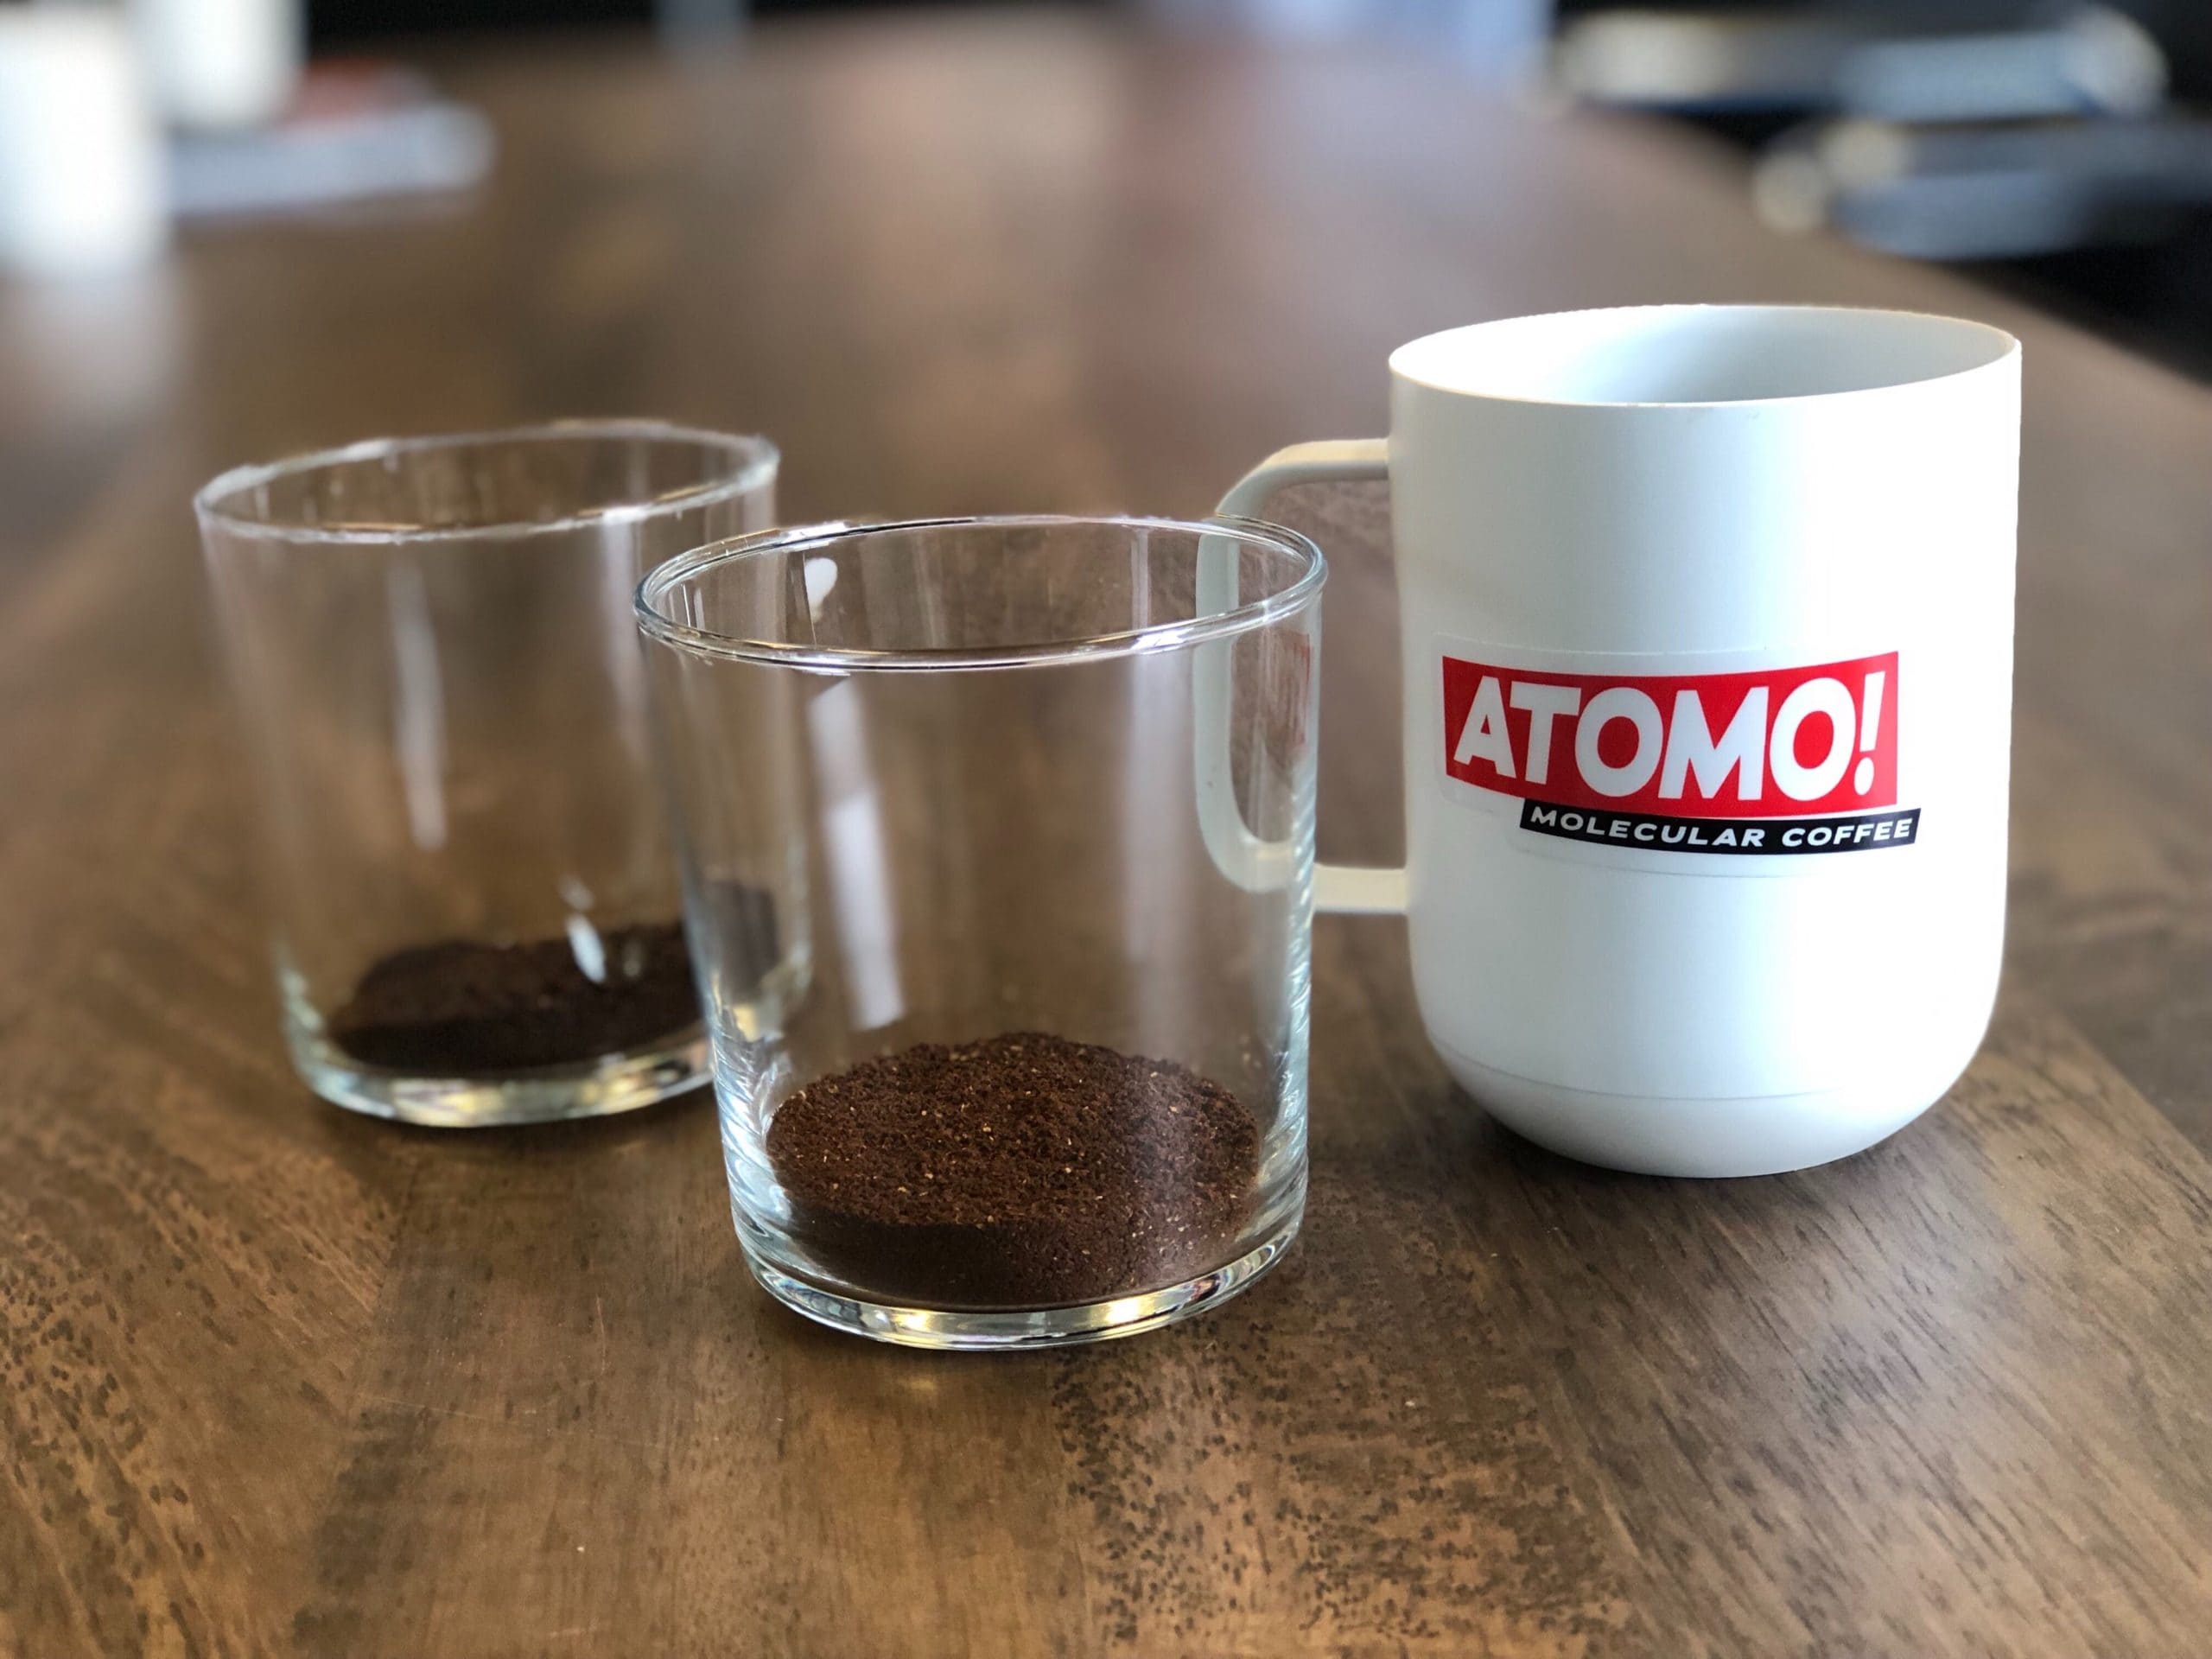 커피 없는 특별한 커피? ATOMO COFFEE - Has Science Engineered Better Coffee?